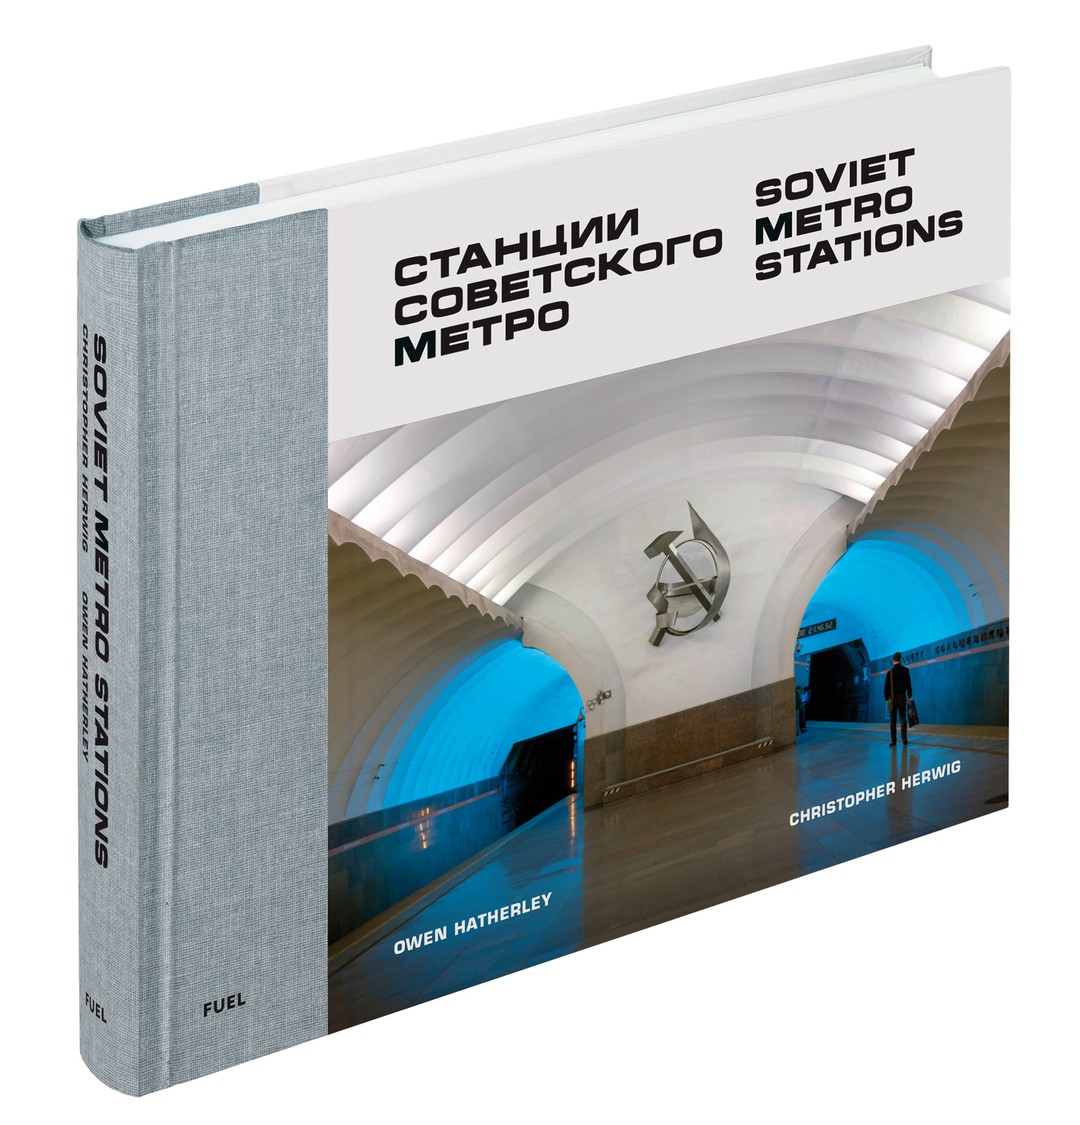 现货 Soviet Metro Stations 进口艺术 苏联地铁站摄影作品集 俄罗斯公共建筑艺术 苏联设计 FUEL Publishing【中商原版】